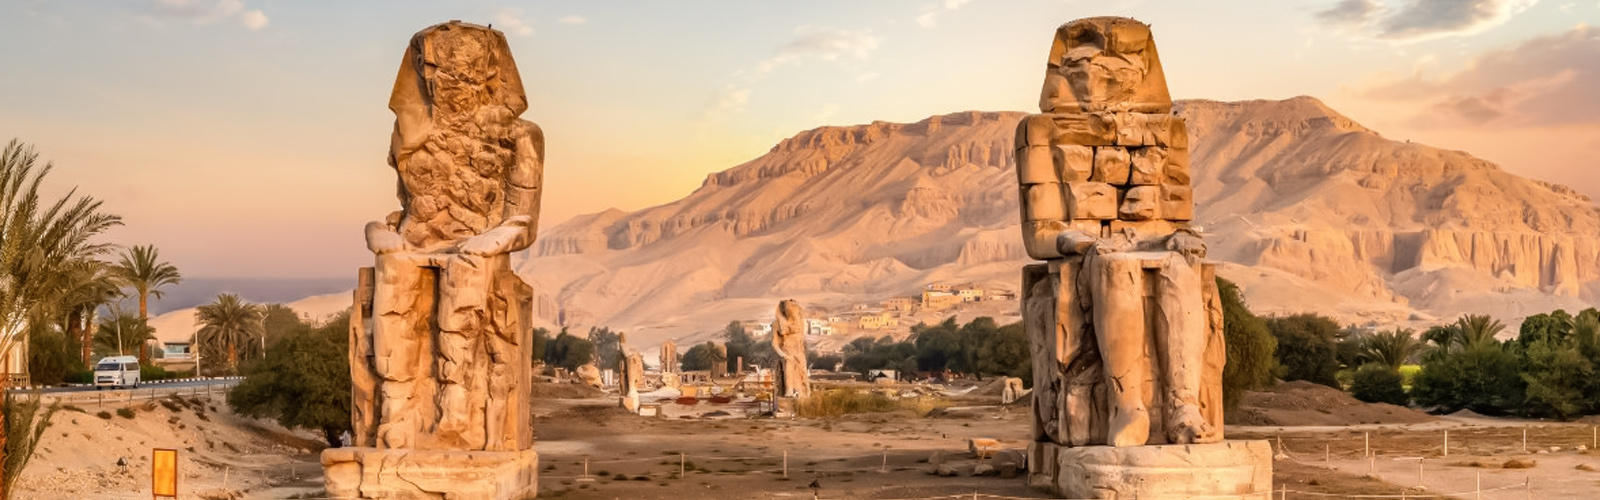 colossi of memnon egypt